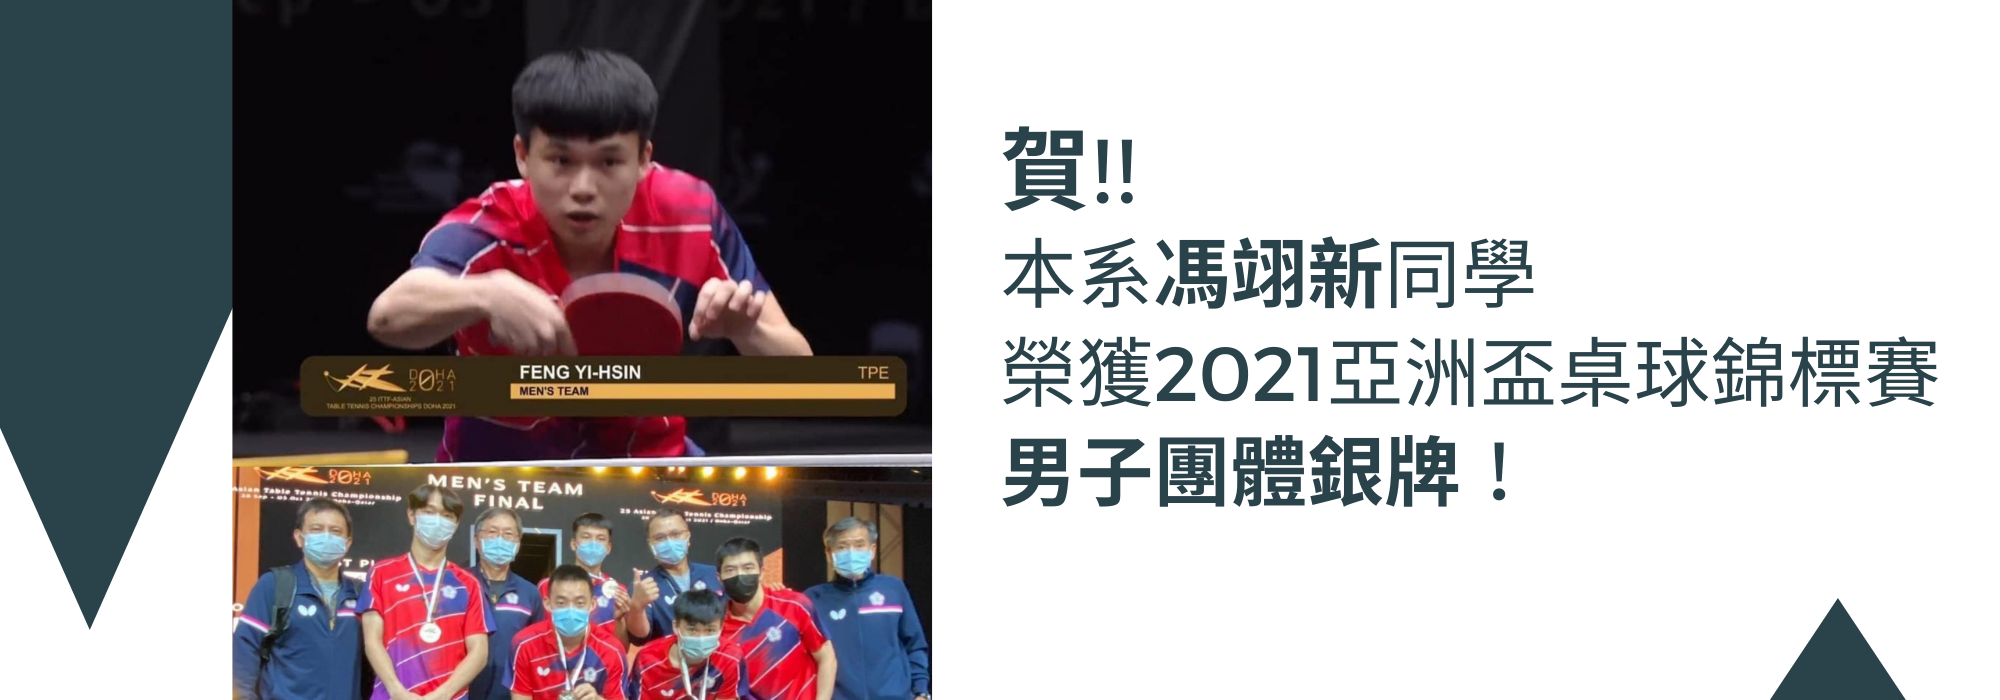 馮翊新榮獲2021亞洲盃桌球錦標賽男子團體銀牌